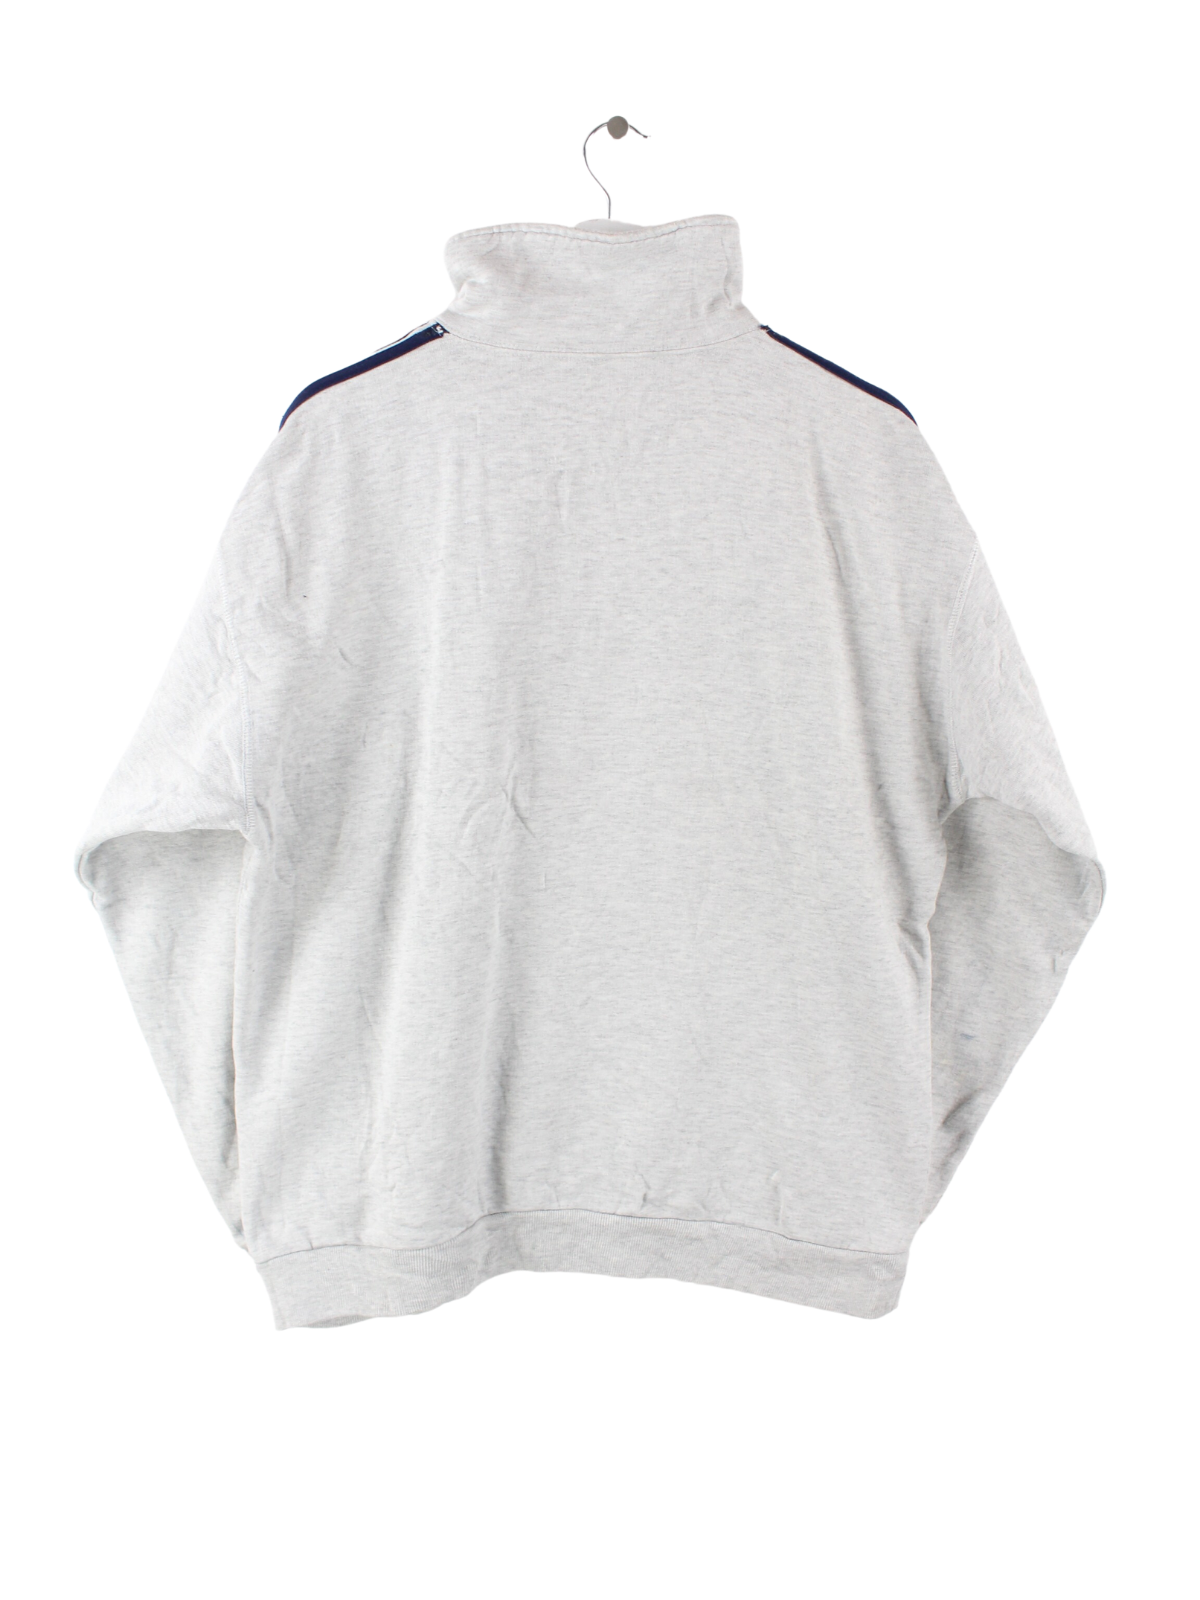 Adidas Half Zip Sweater Grau L